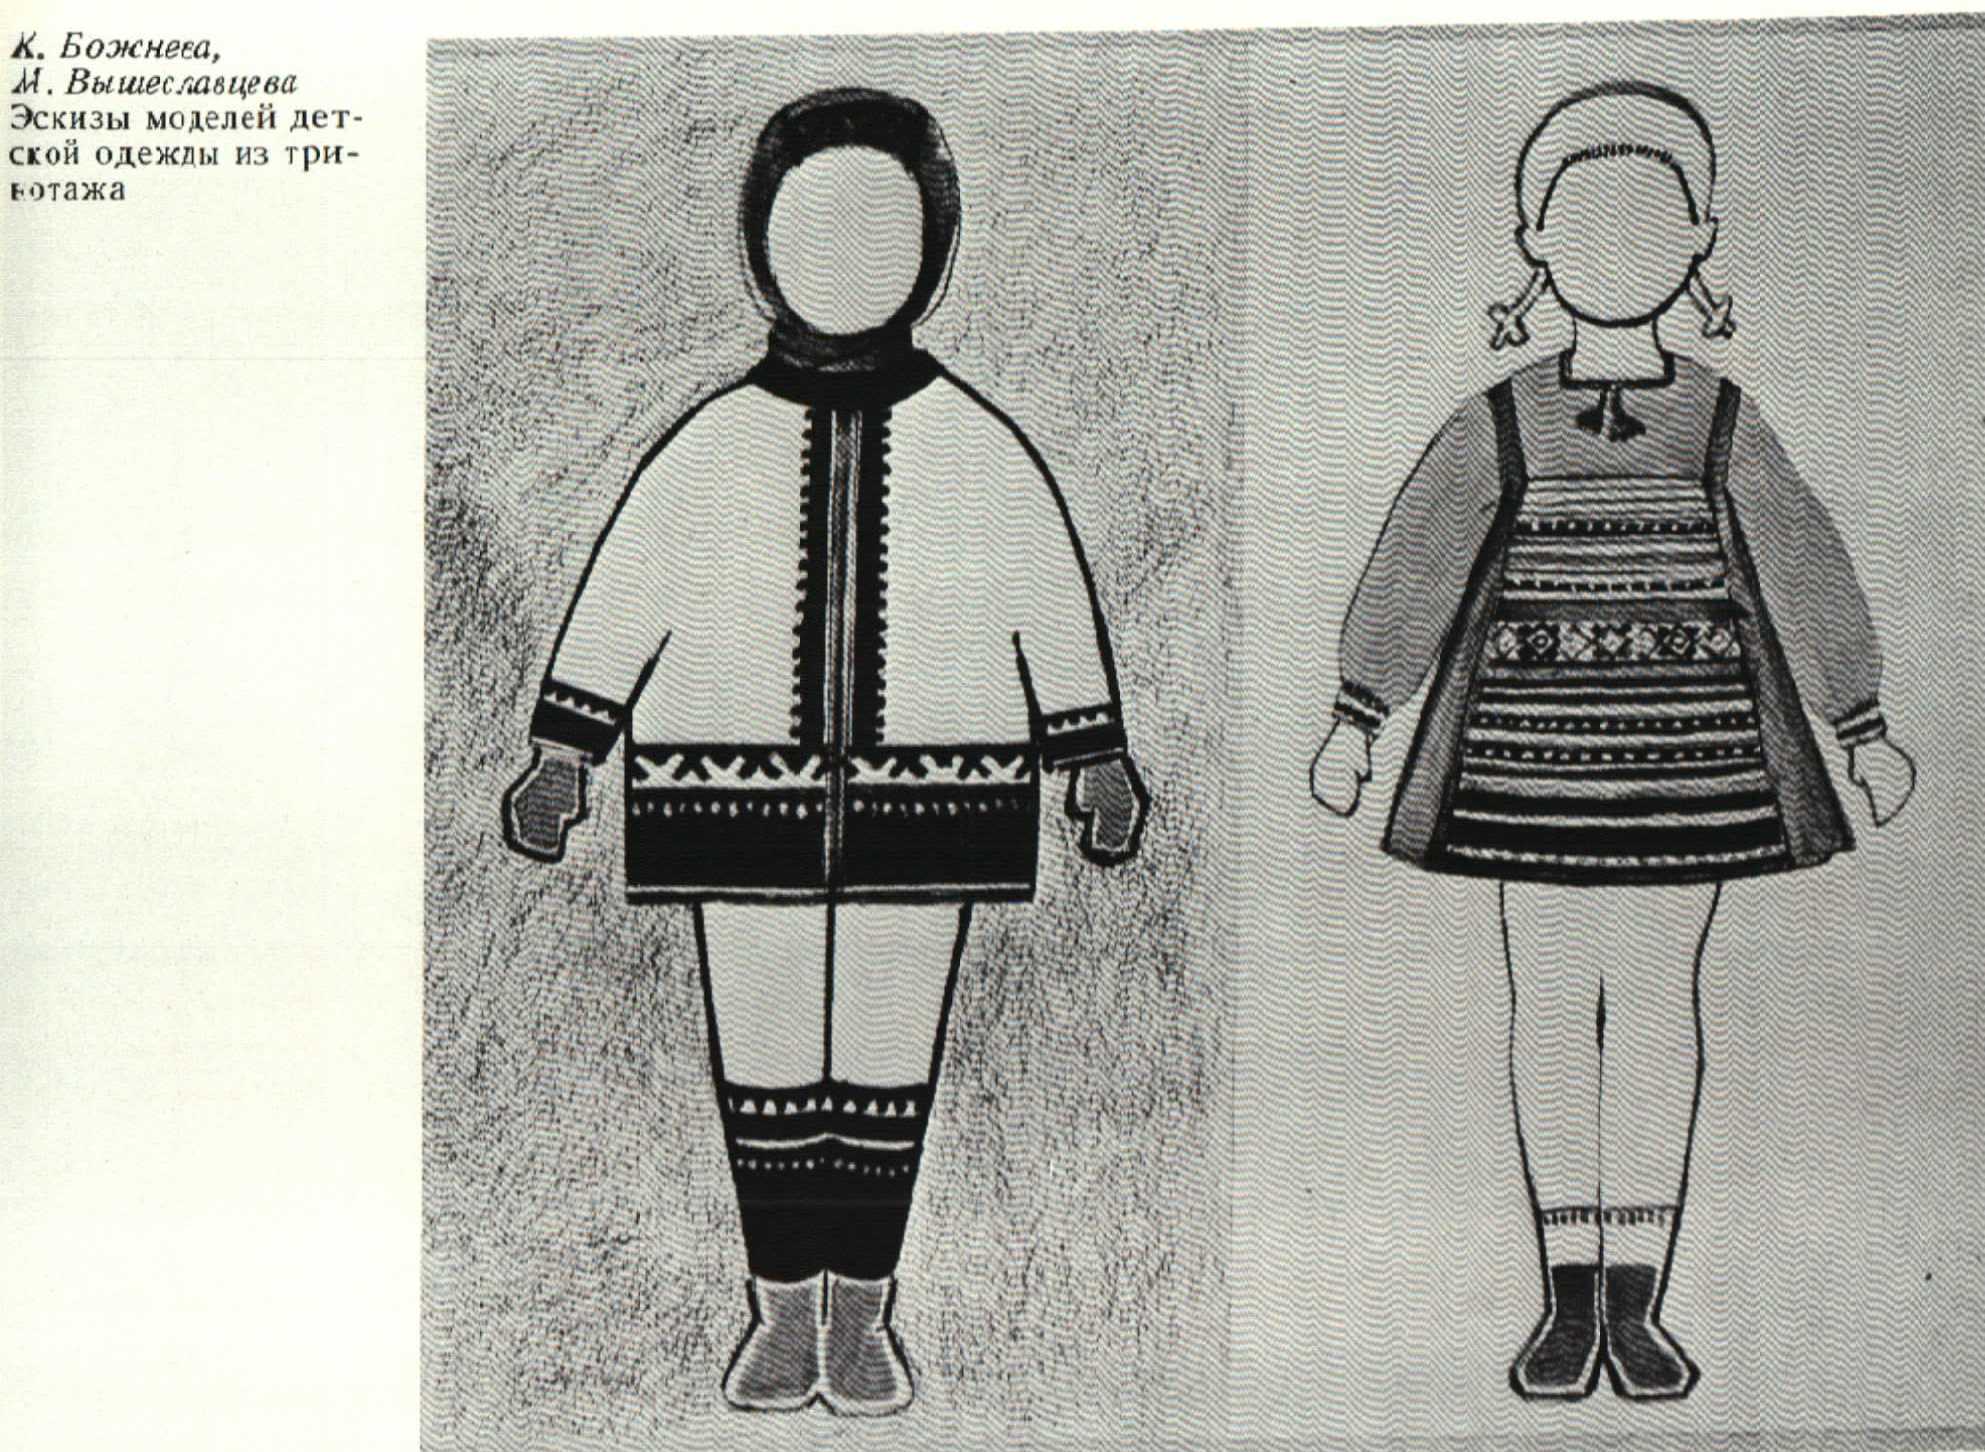 К. Божнева и М. Вышеславцева. Эскизы моделей детской одежды из трикотажа